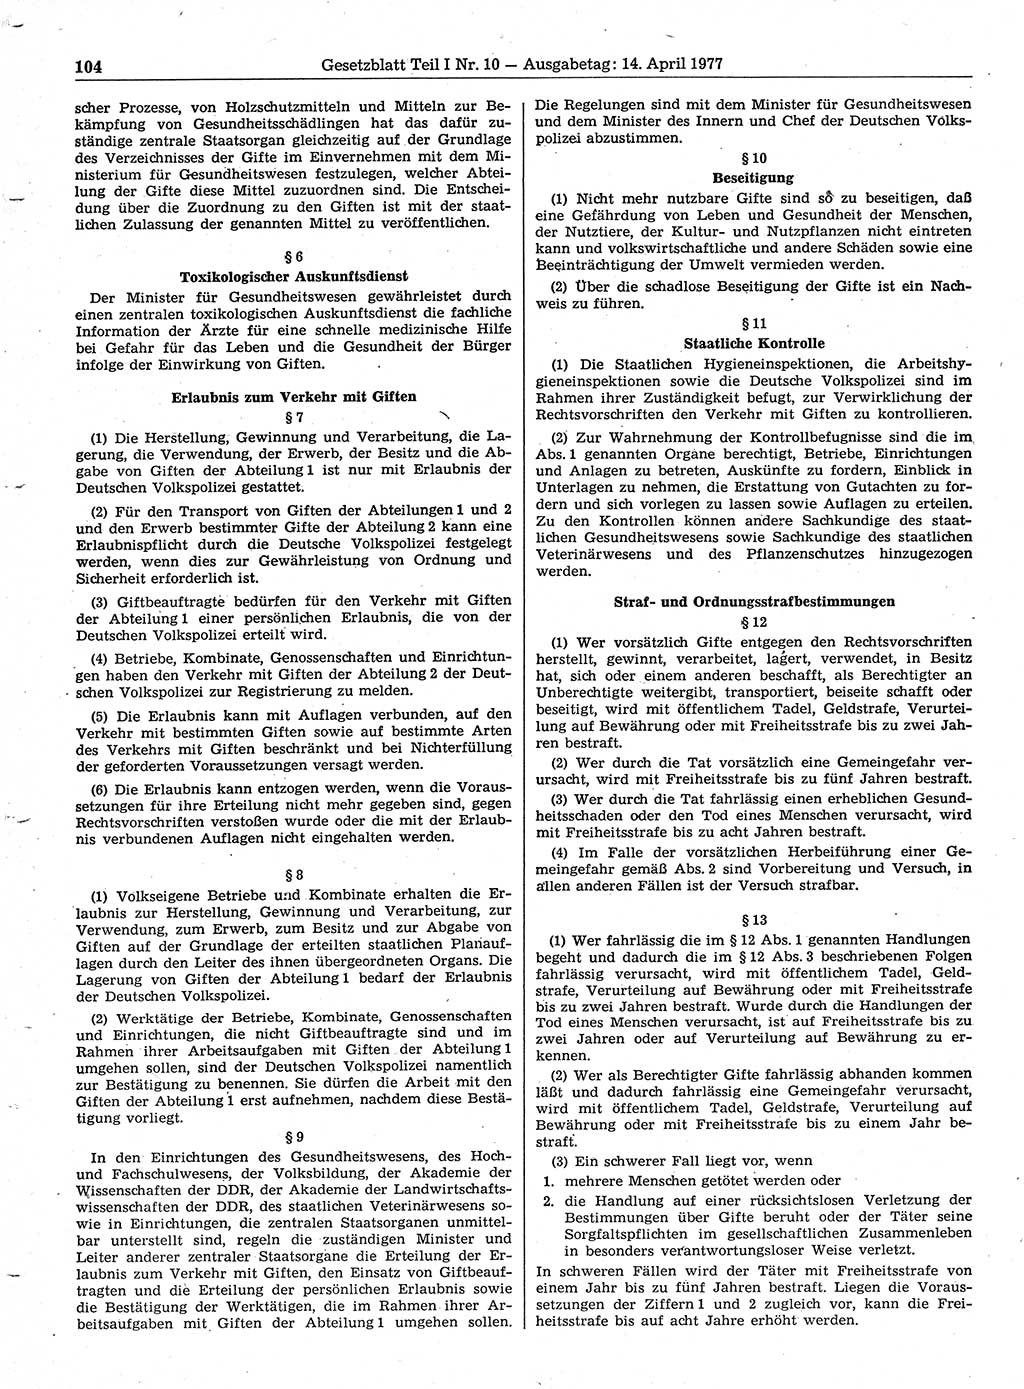 Gesetzblatt (GBl.) der Deutschen Demokratischen Republik (DDR) Teil Ⅰ 1977, Seite 104 (GBl. DDR Ⅰ 1977, S. 104)